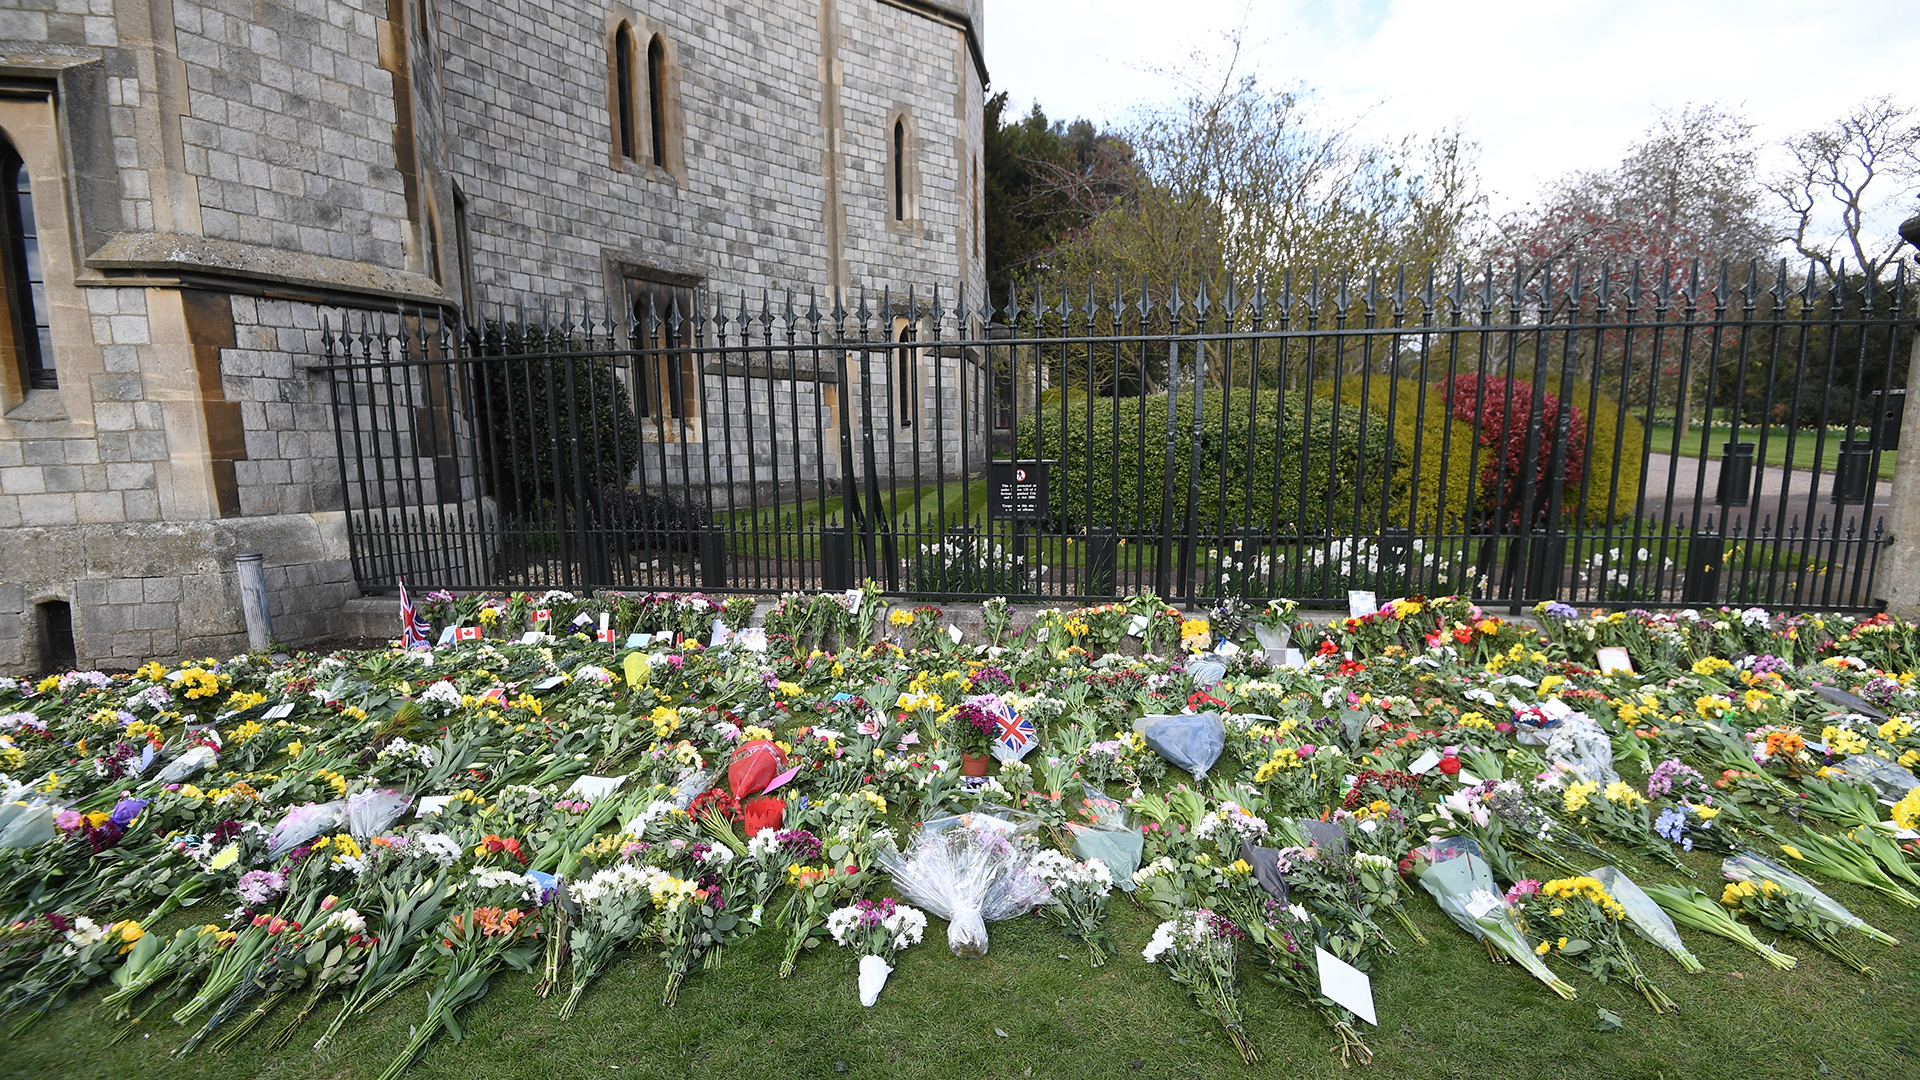 Refuerzan seguridad en Inglaterra ante funeral del príncipe Felipe - ofrendas-florales-afuera-del-castillo-de-windsor-por-muerte-del-principe-felipe